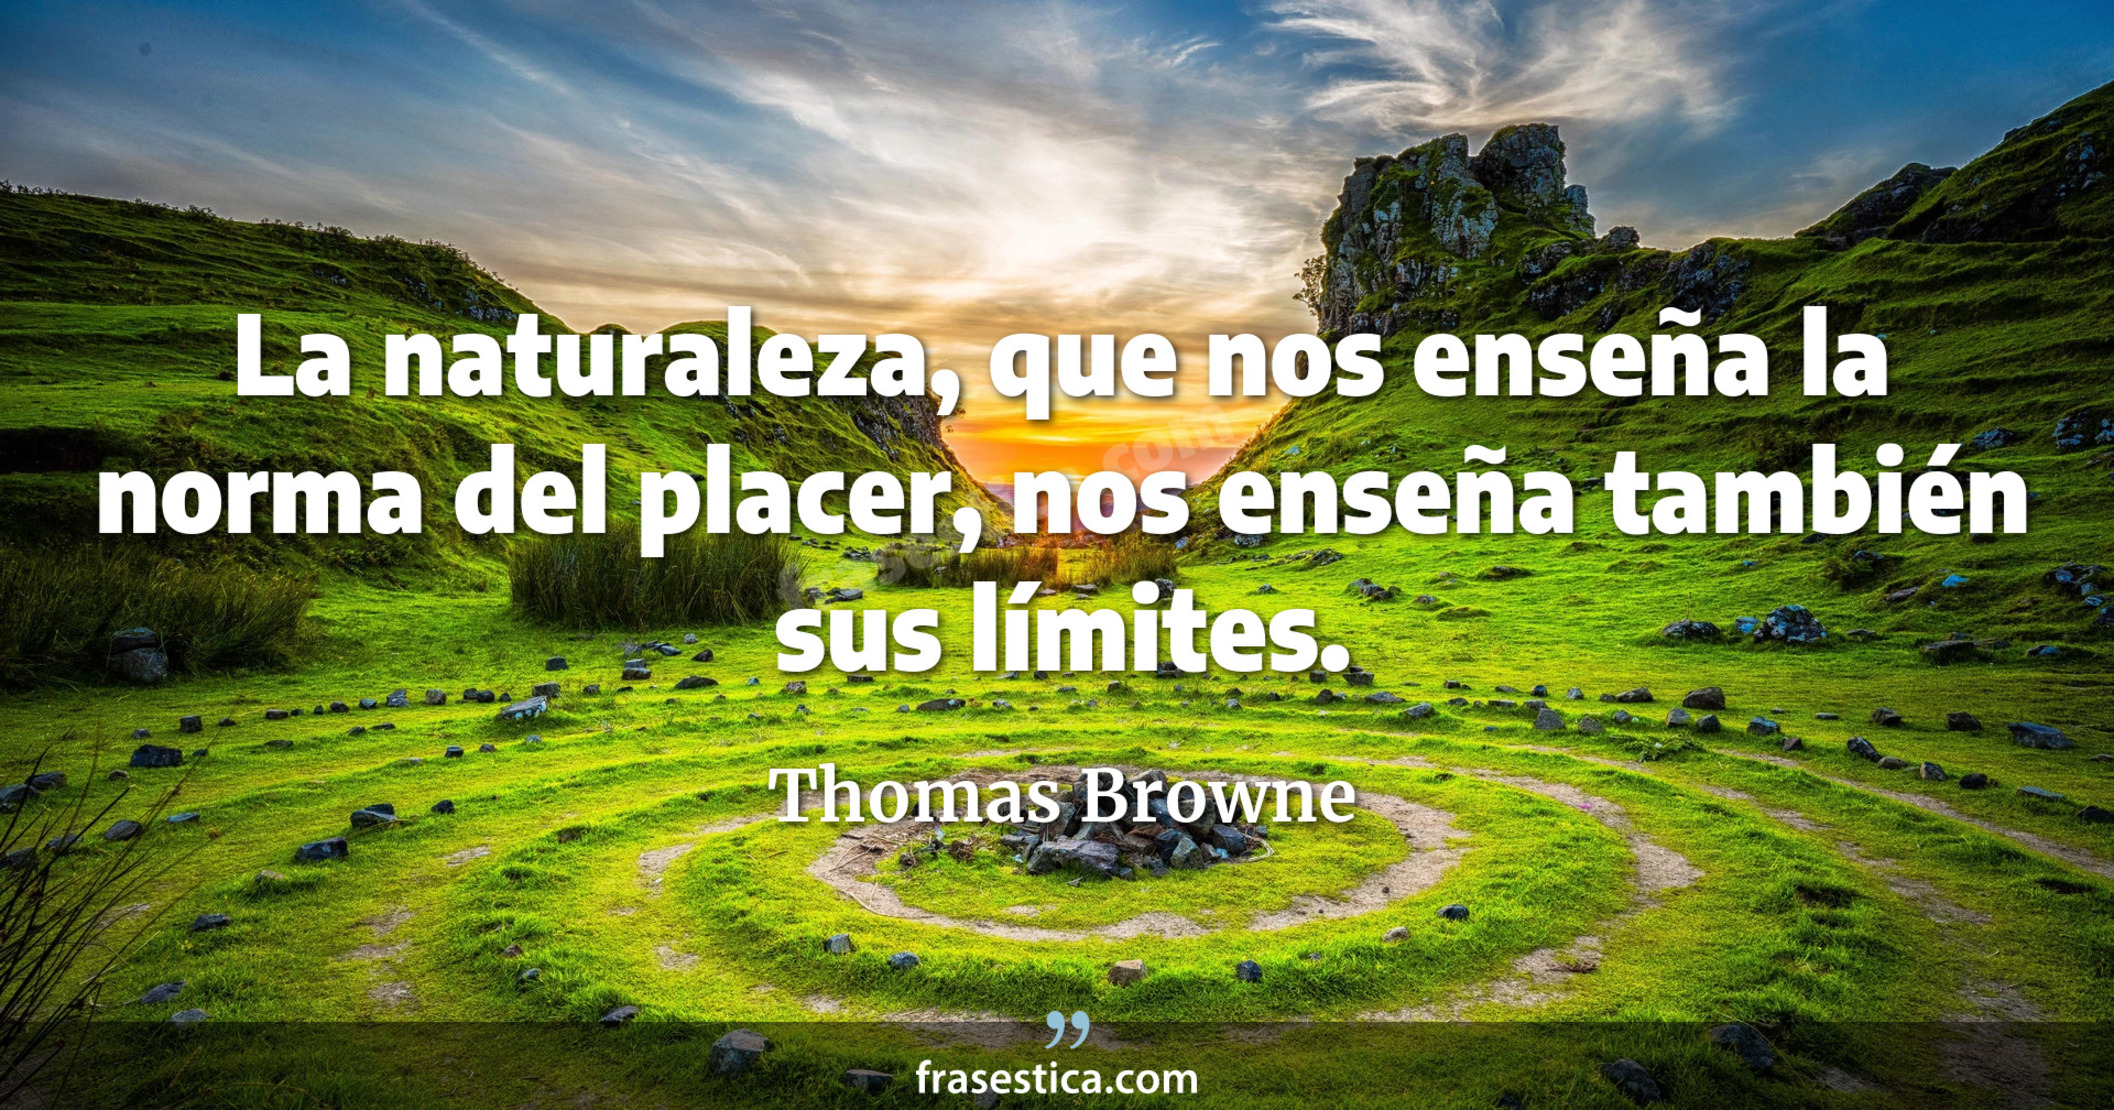 La naturaleza, que nos enseña la norma del placer, nos enseña también sus límites. - Thomas Browne